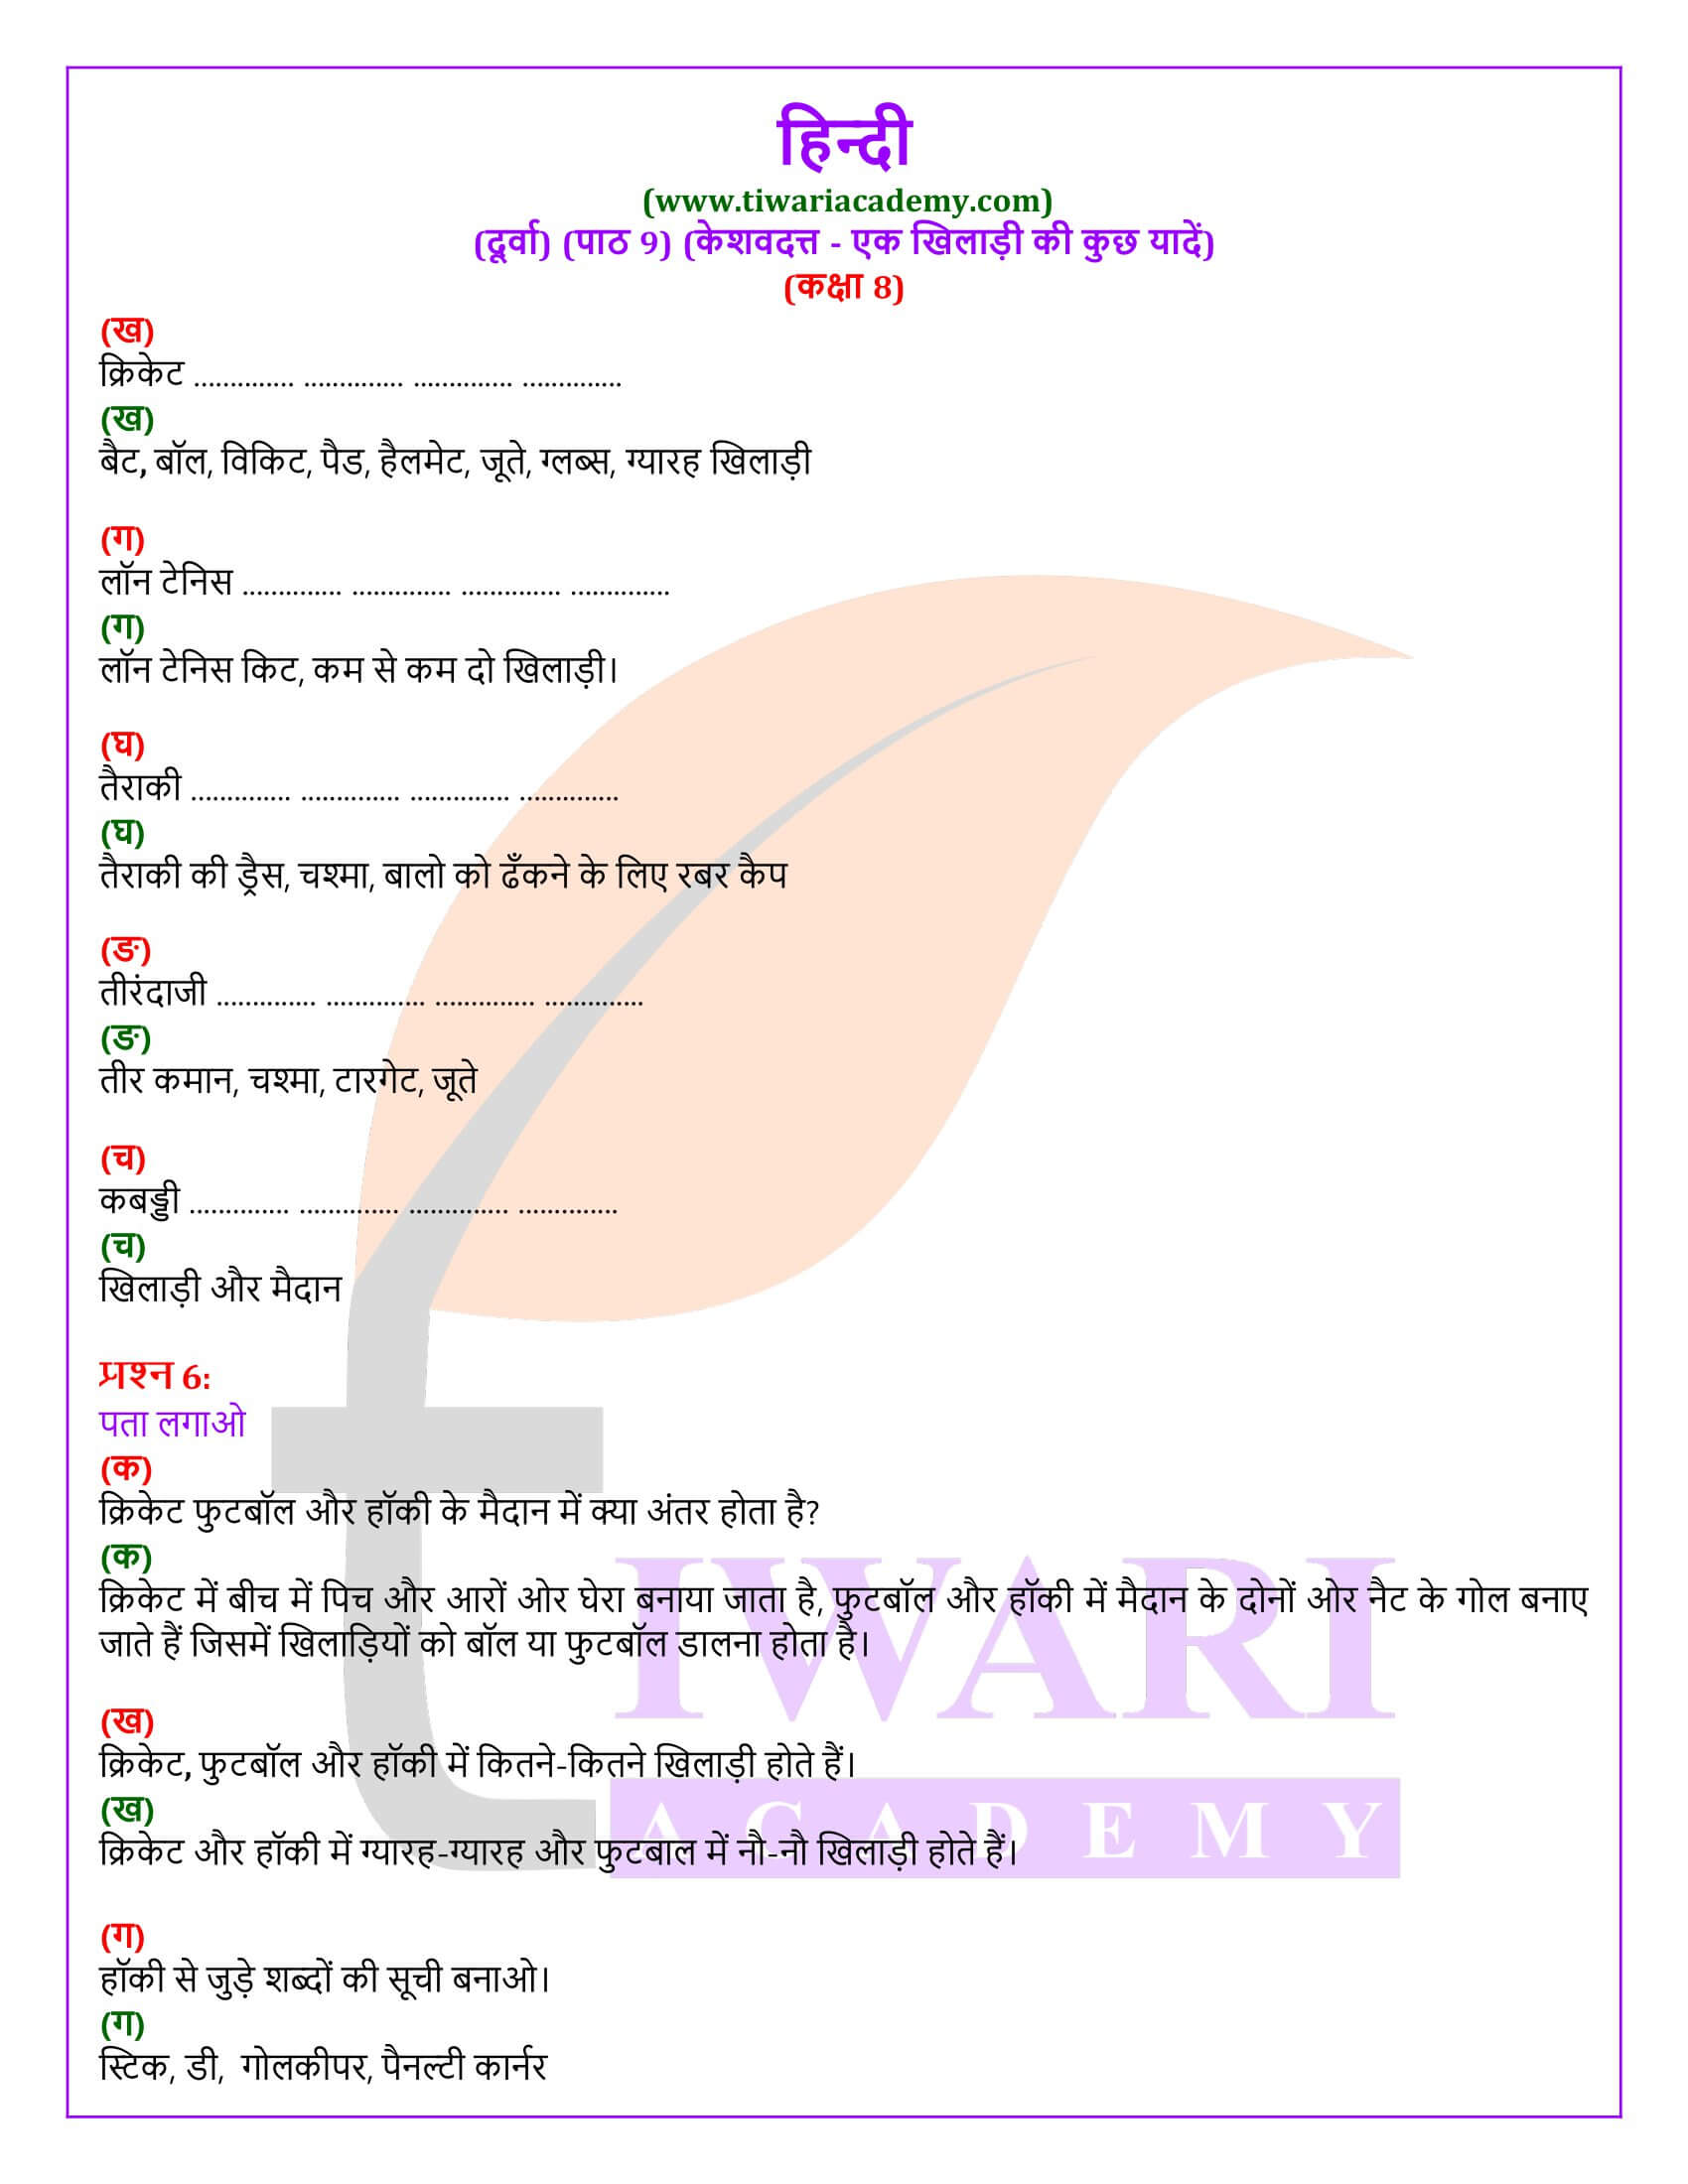 कक्षा 8 हिंदी दूर्वा अध्याय 9 के प्रश्न उत्तर